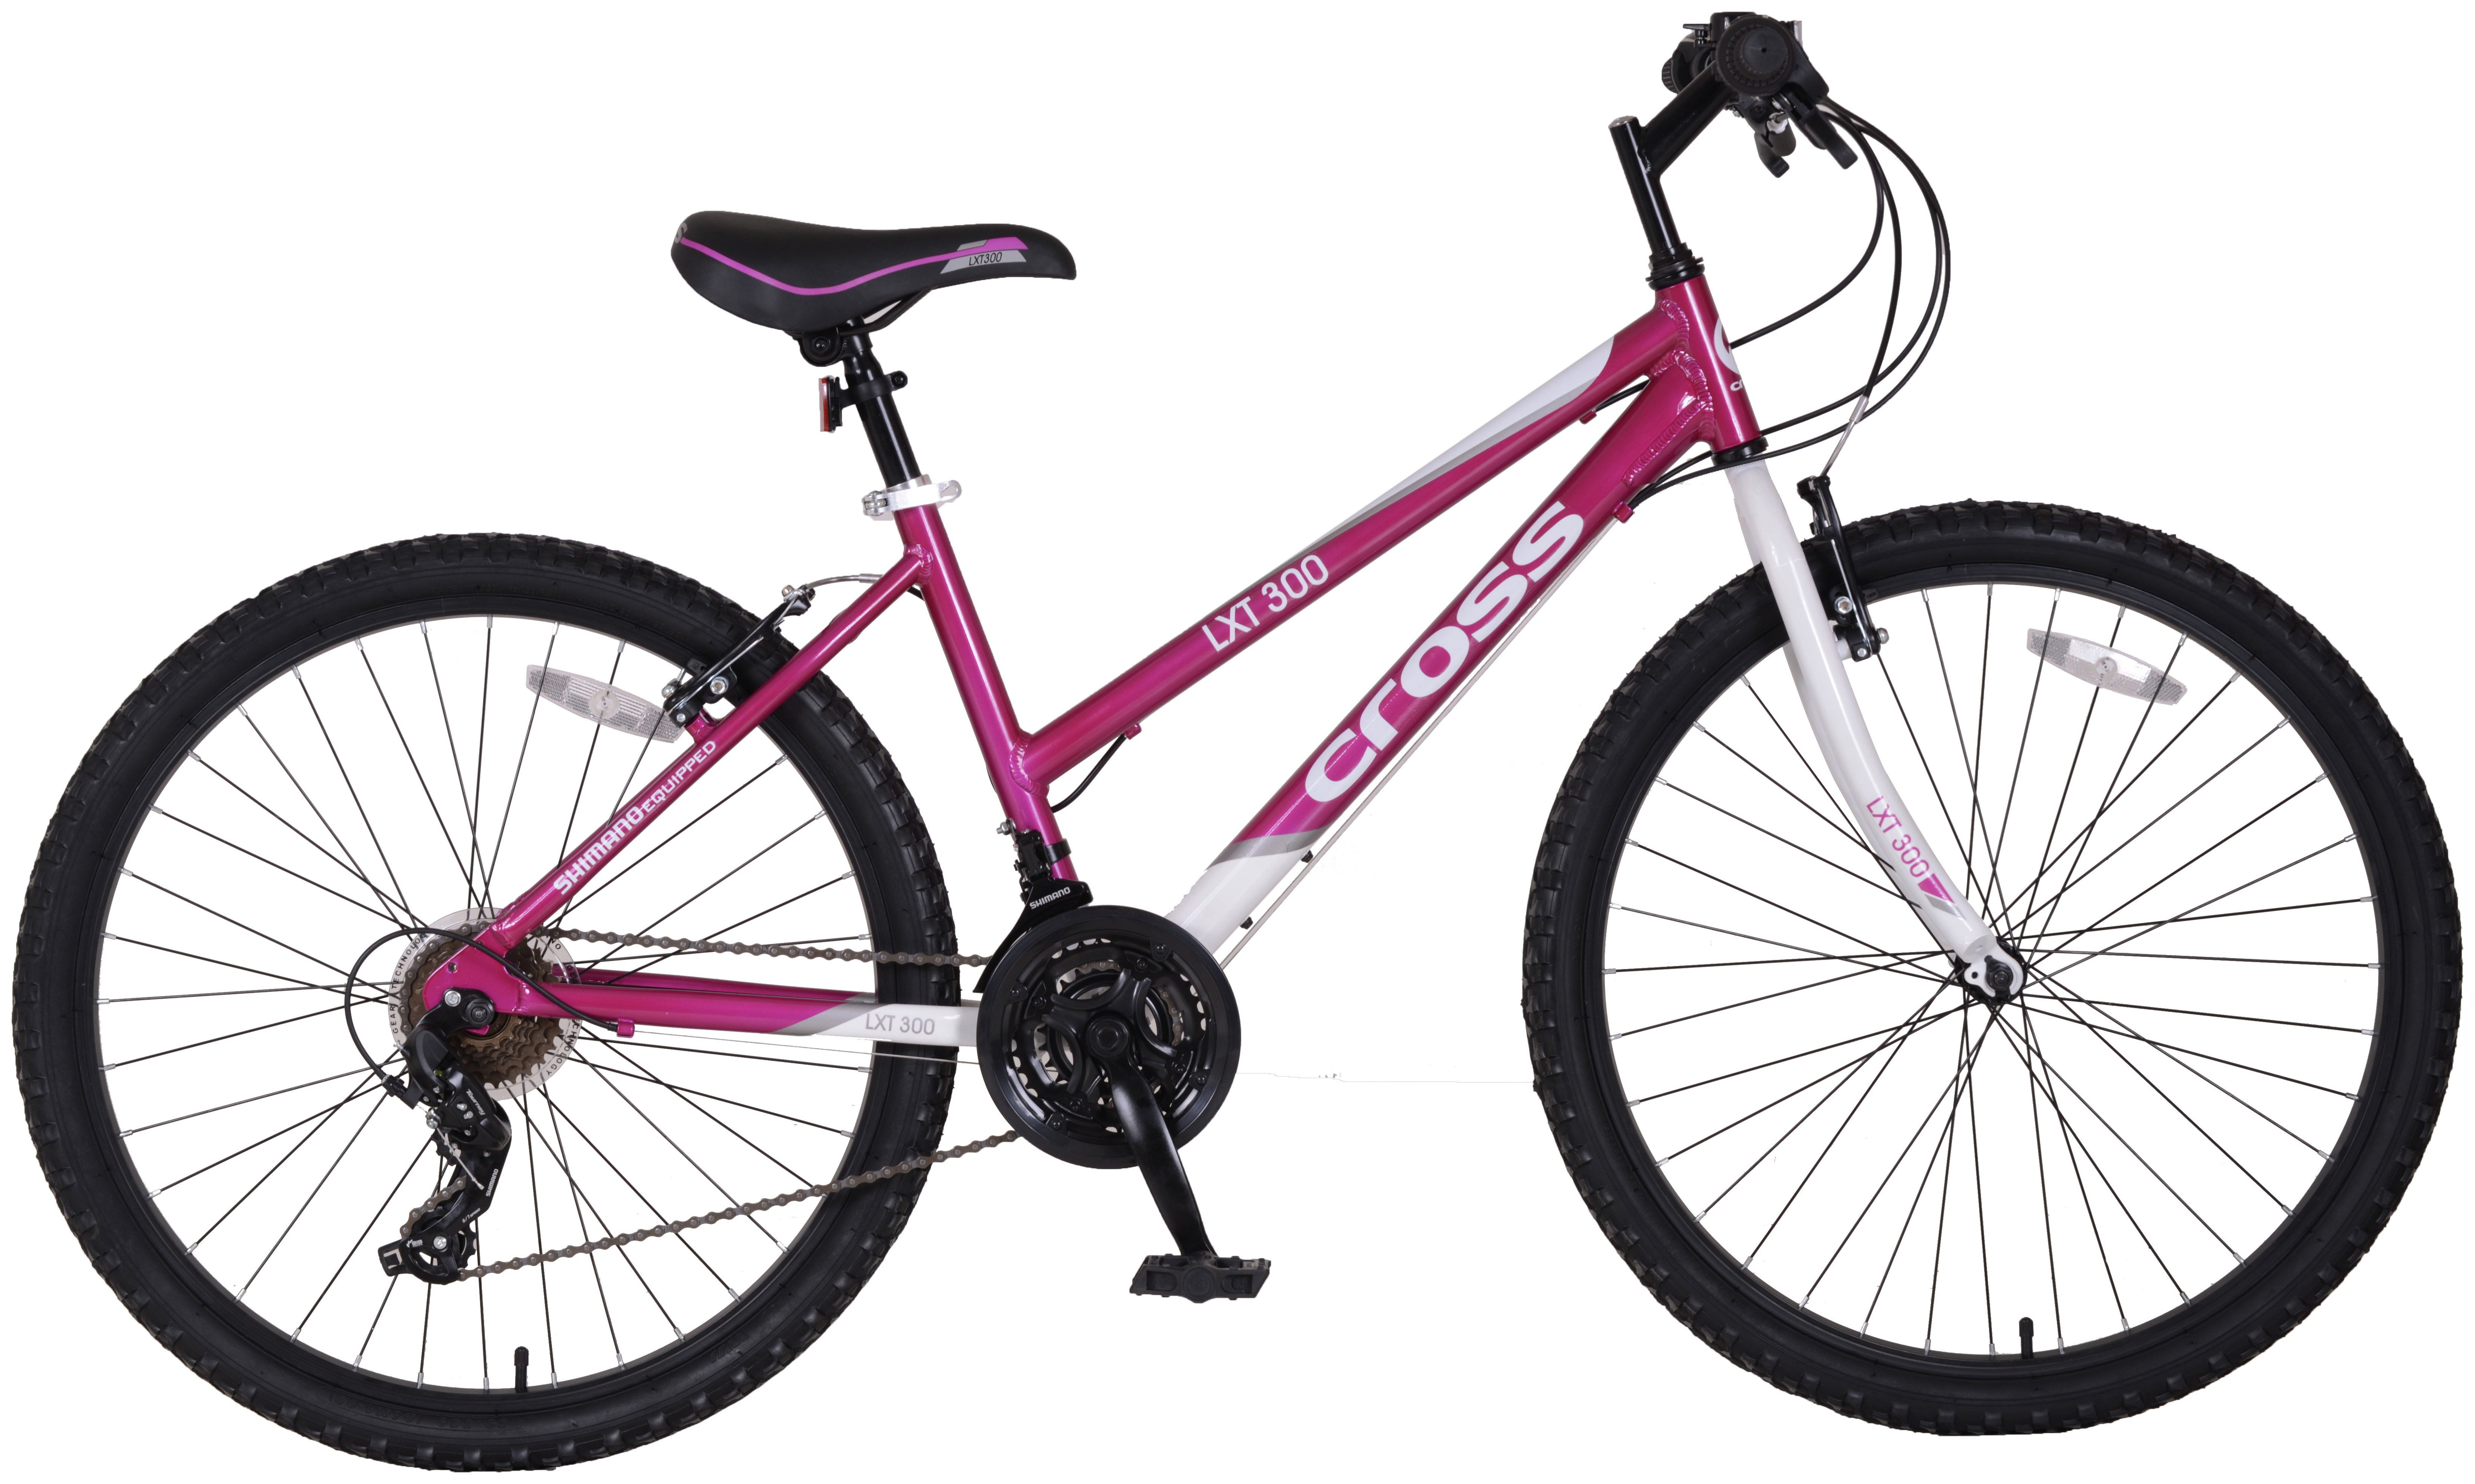 cross lxt300 26 inch wheel size womens mountain bike